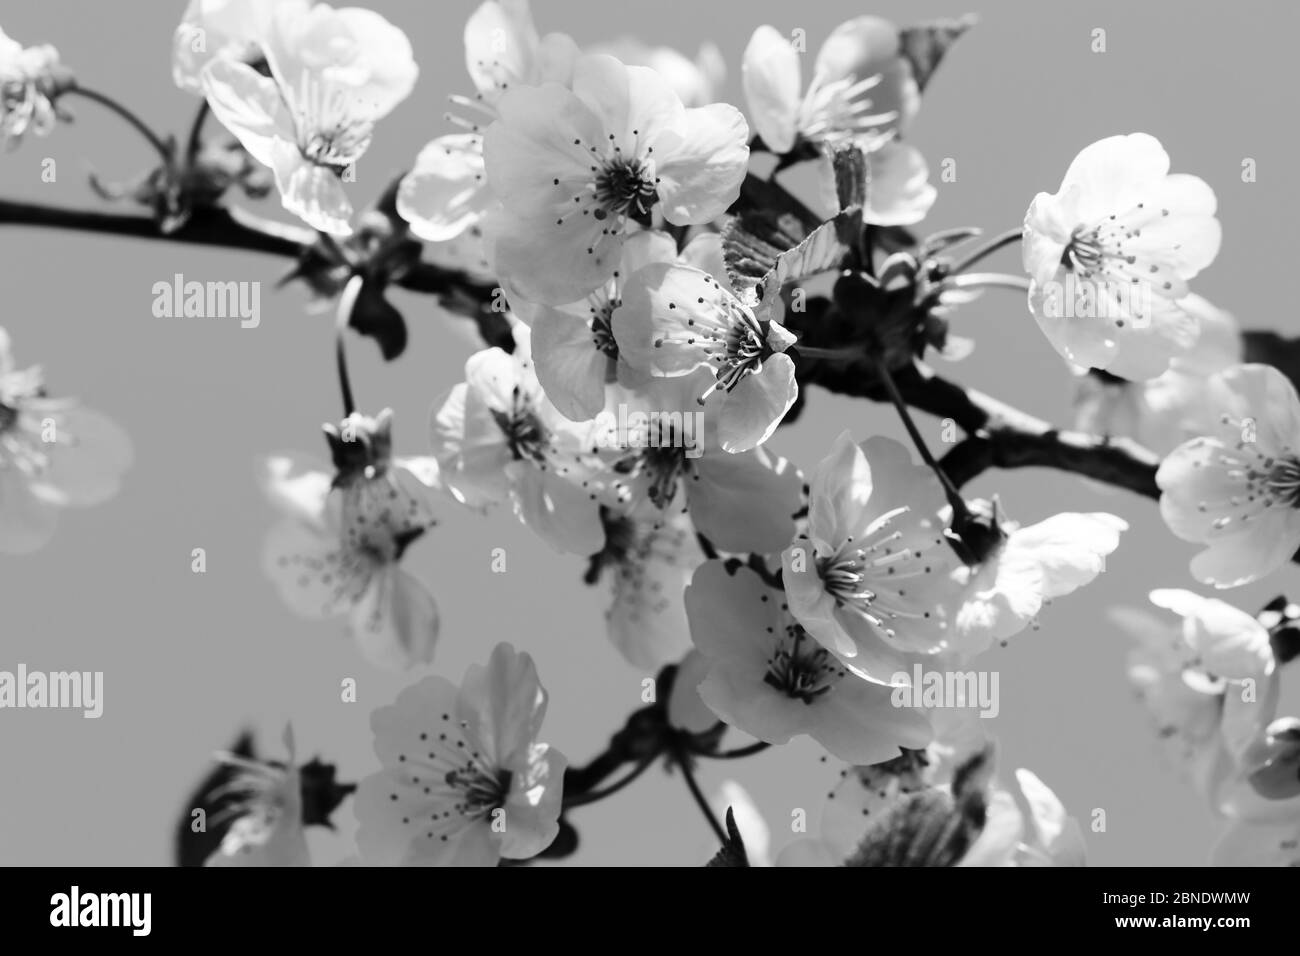 Sonnenstrahlen blühenden Zweig des Obstbaums an sonnigen Tag. Blühende Pflanze aus der Familie der Rosengewächse Rosaceae, Gattung Prunus. Wilde Kirsche. Schwarz-weiße Retro-Tonne Stockfoto